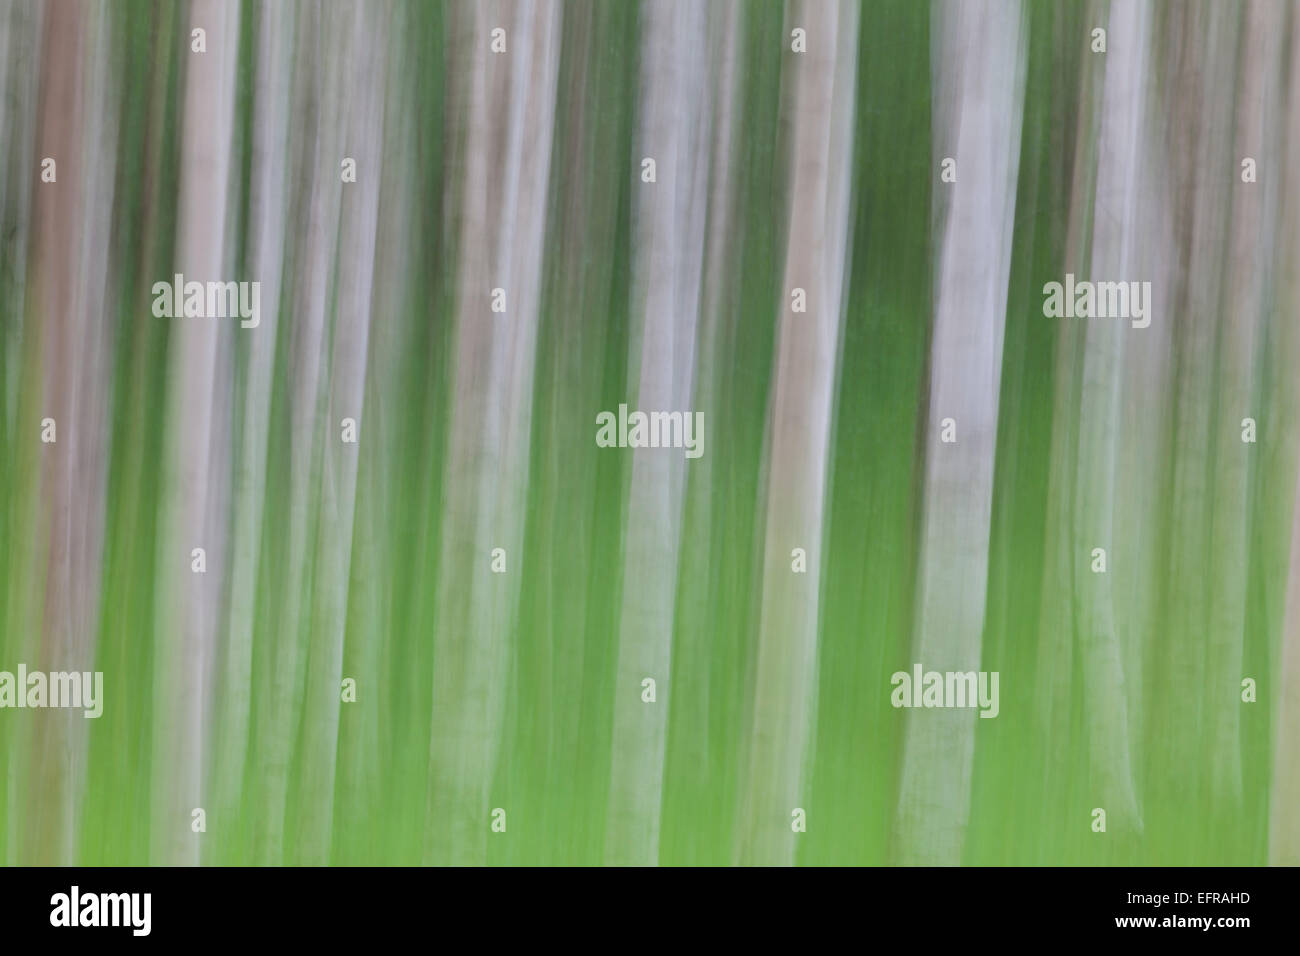 Argento / betulla presenta verrucosa betulla (Betula pendula / betula alba / Betula verrucosa) movimento sfocati tronchi di betulle in foresta Foto Stock